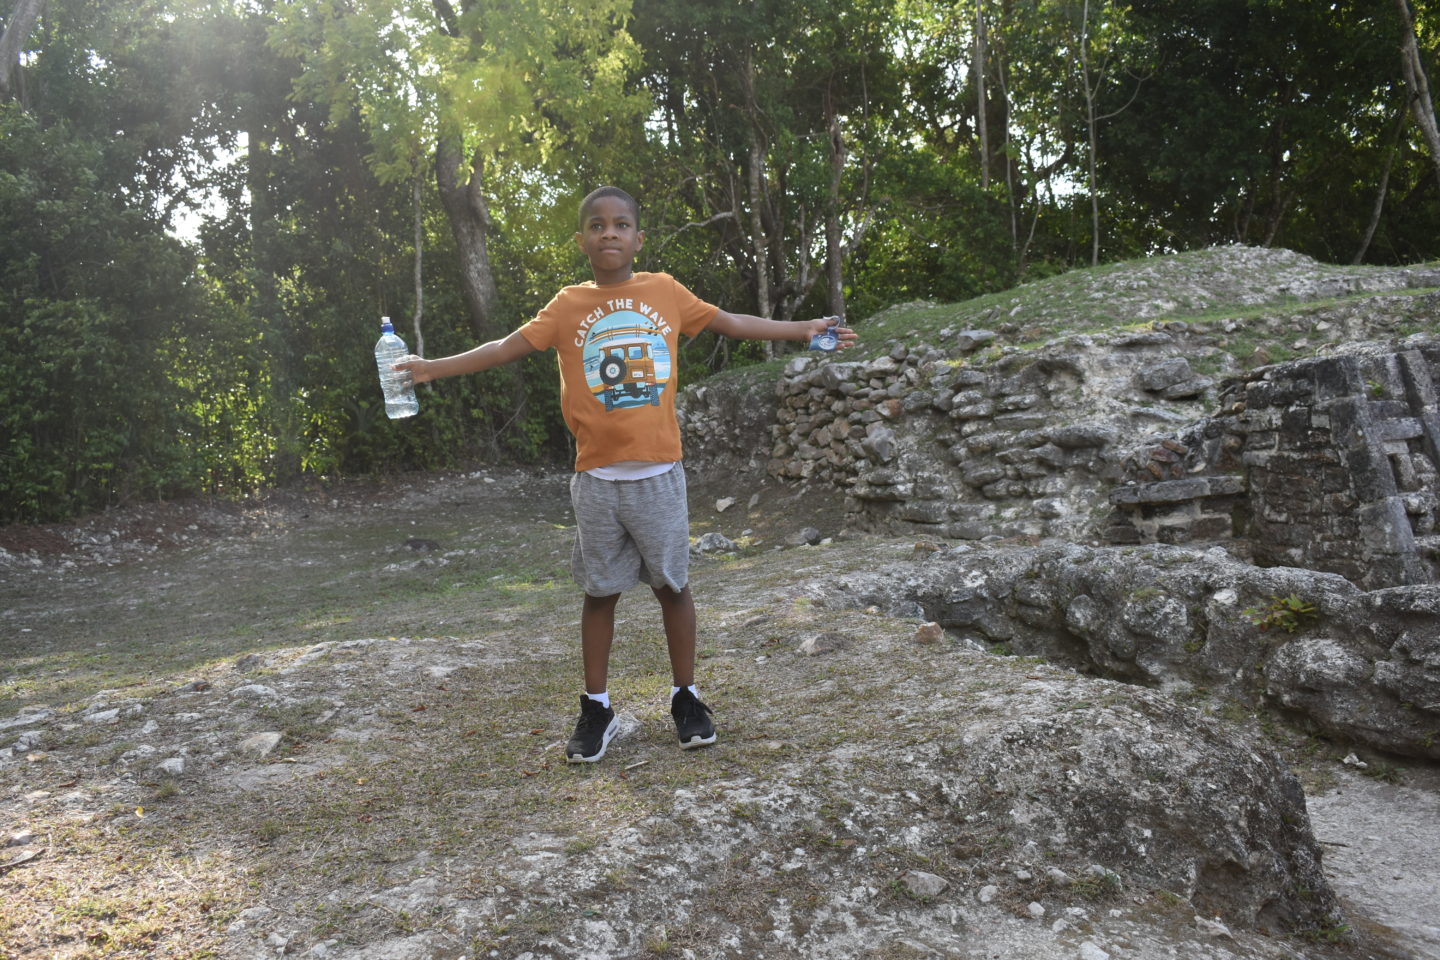 Altun Ha Maya Ruin